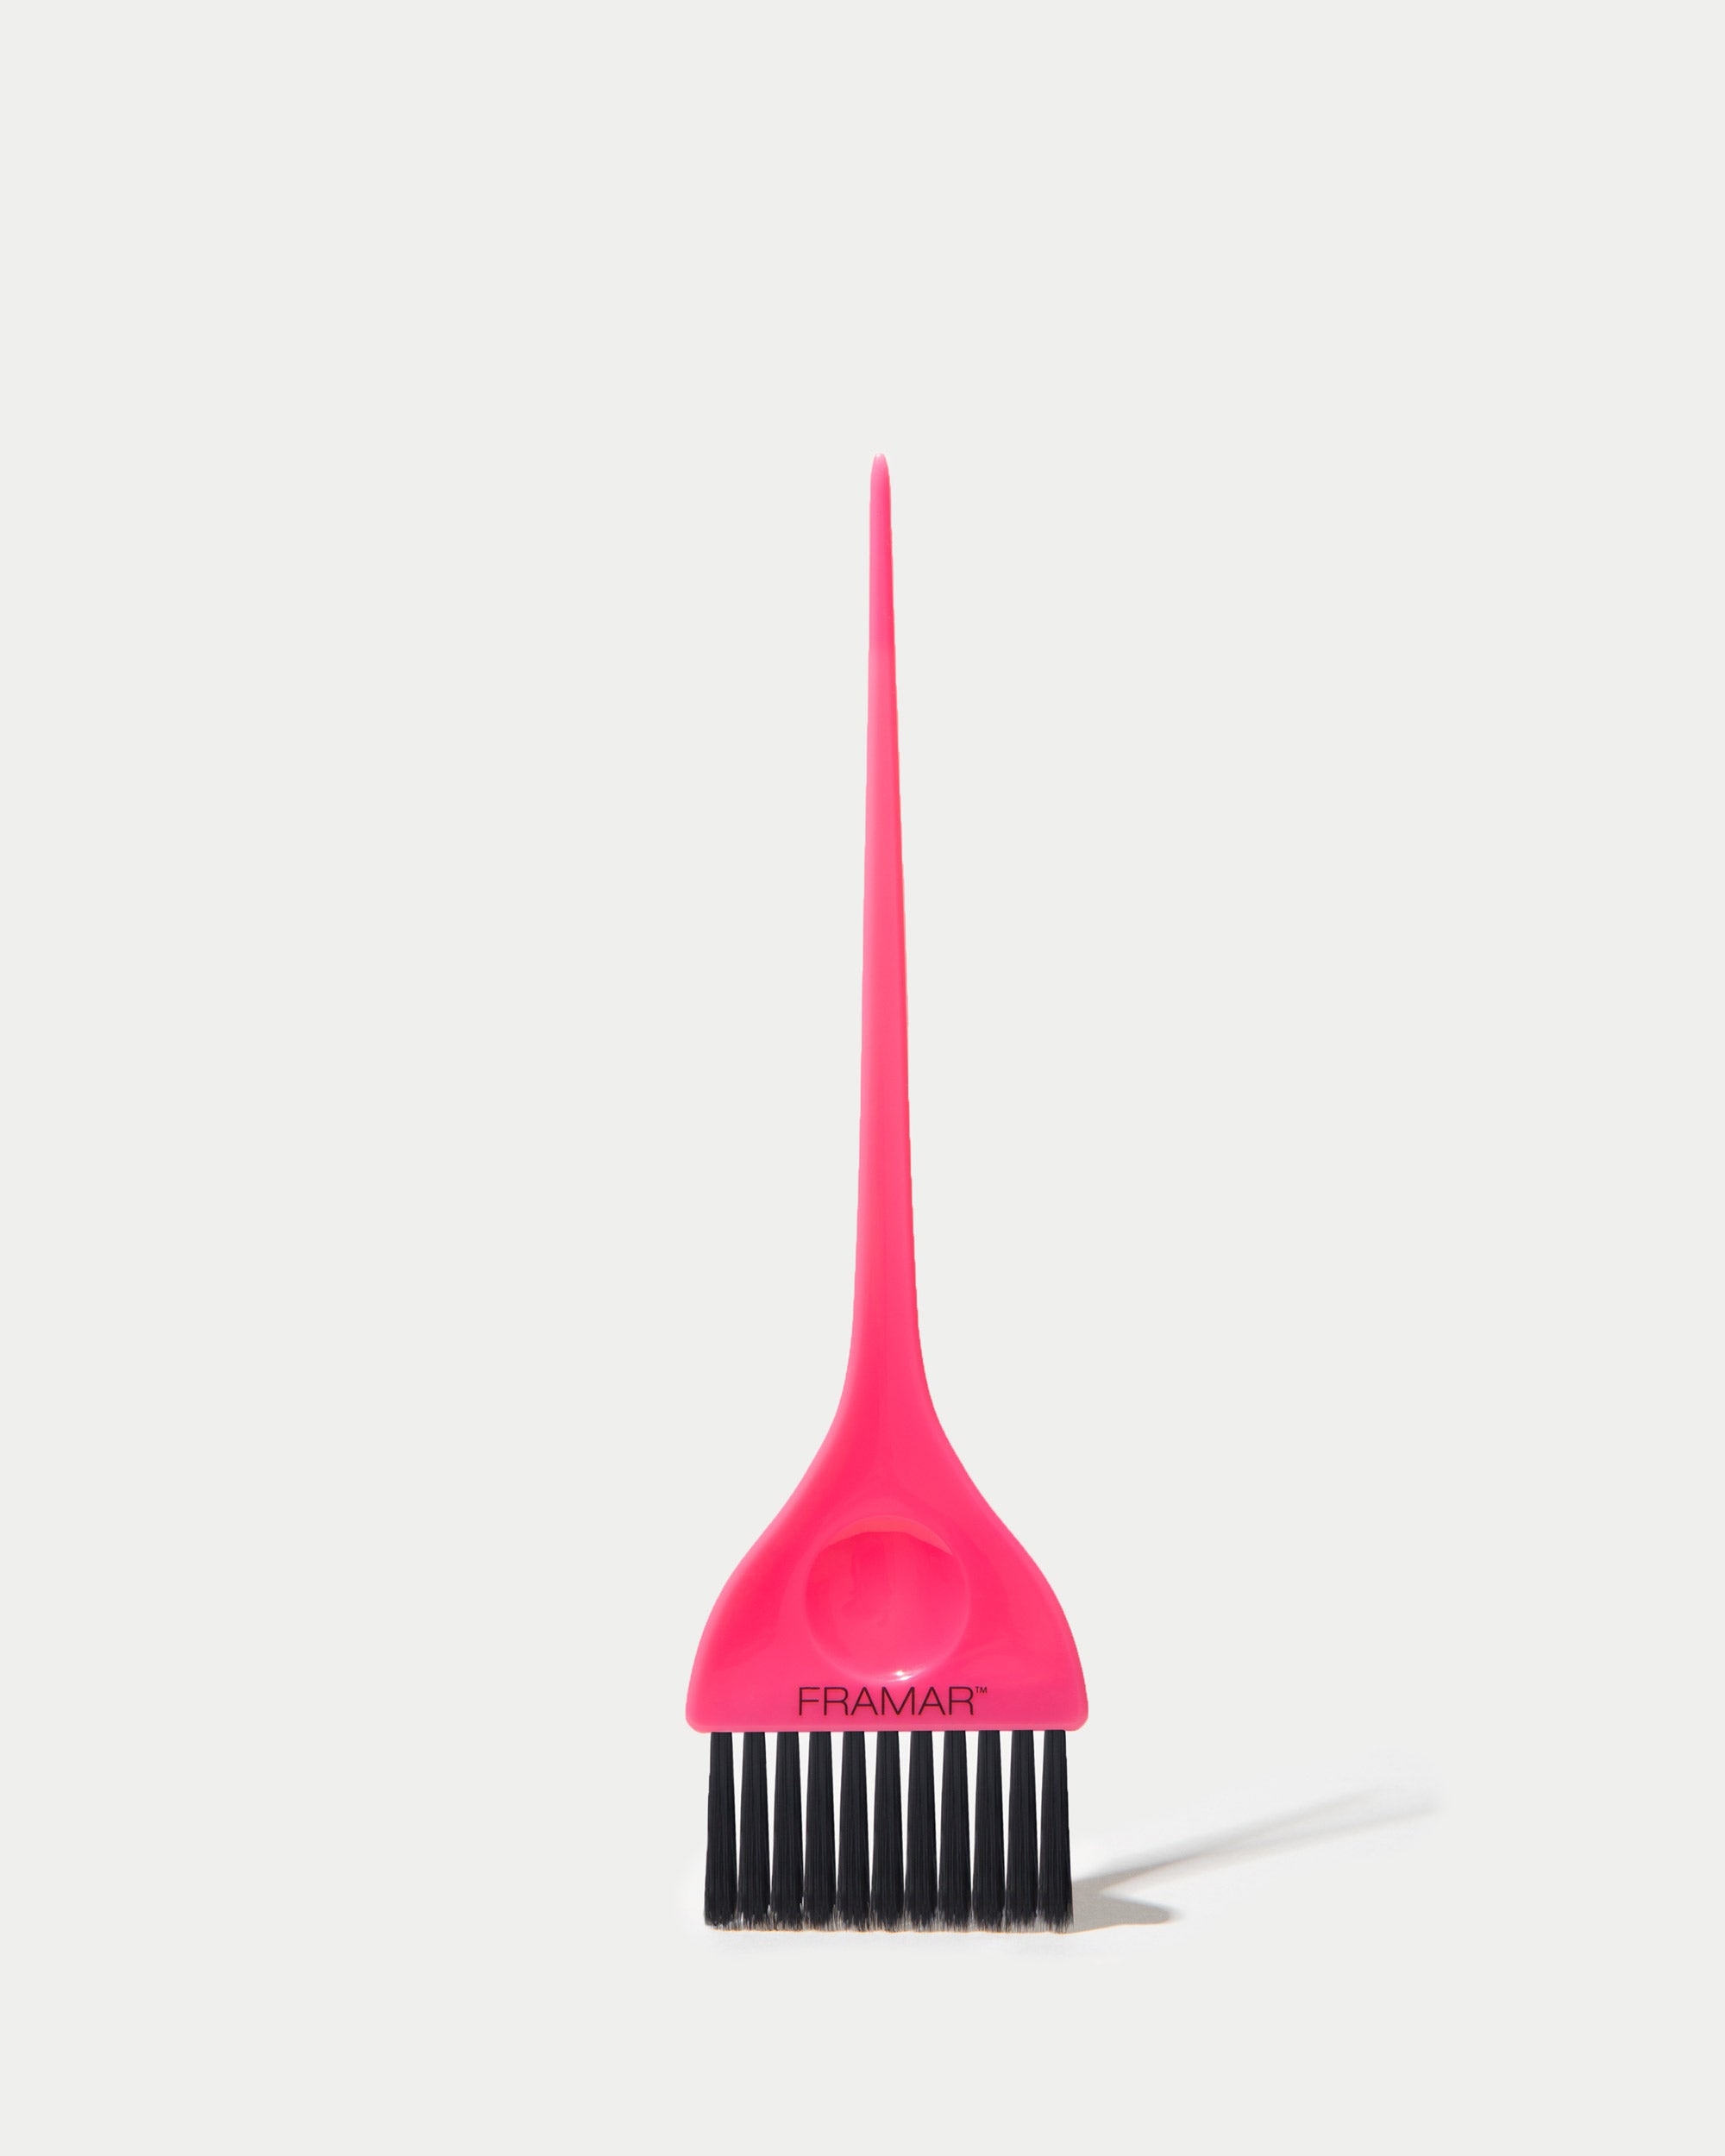 Framar Classic Pink Hair Color Brush | Hair Dye Brush, Tint Brush, Coloring  Brush, Hair Color Applicator Brush